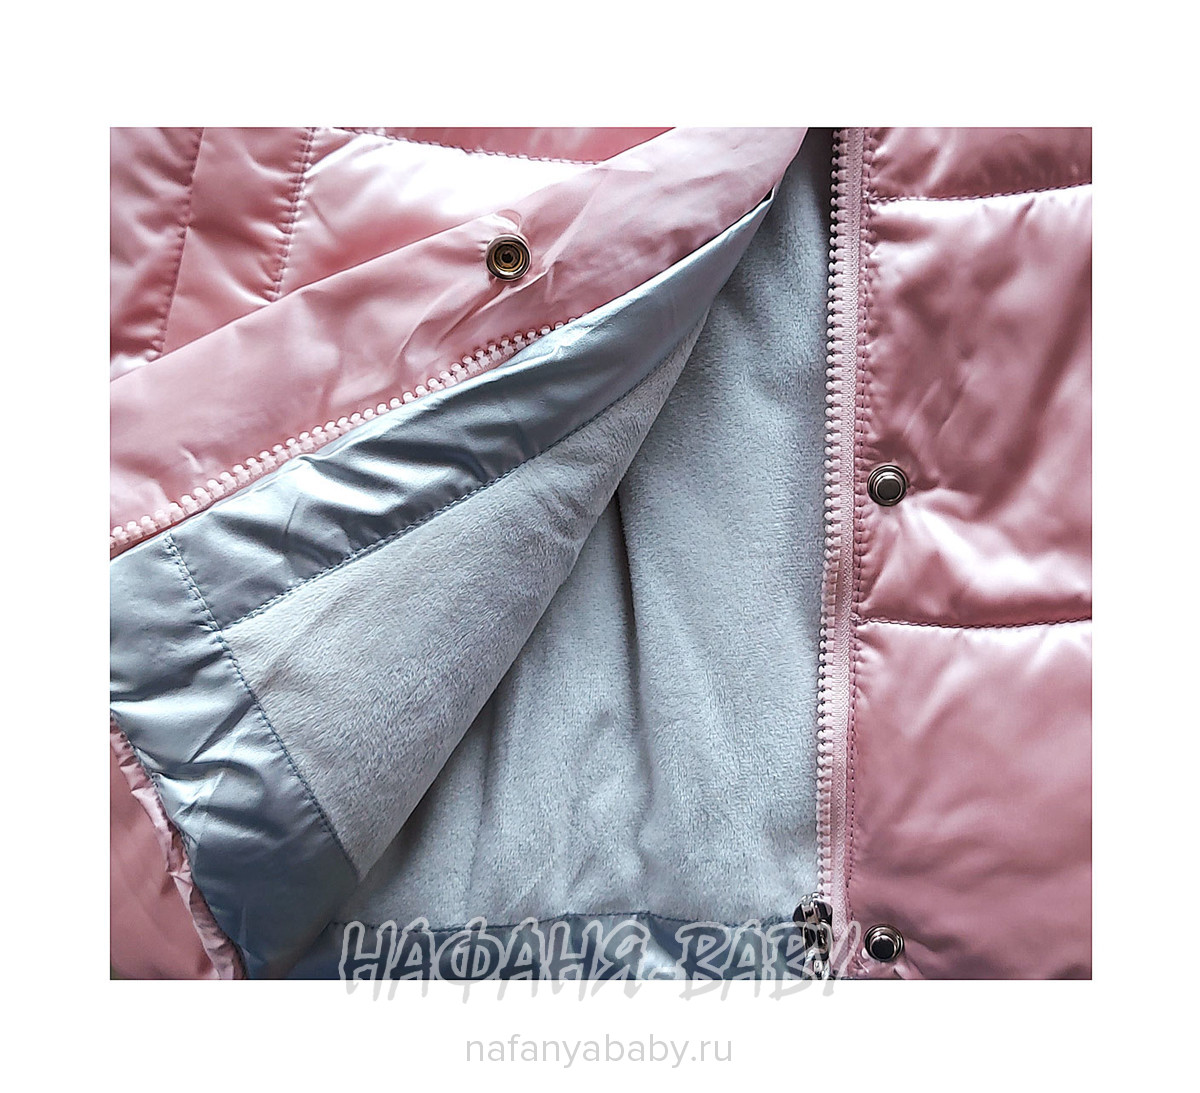 Зимняя удлиненная куртка DELFIN-FREE, купить в интернет магазине Нафаня. арт: 2207.